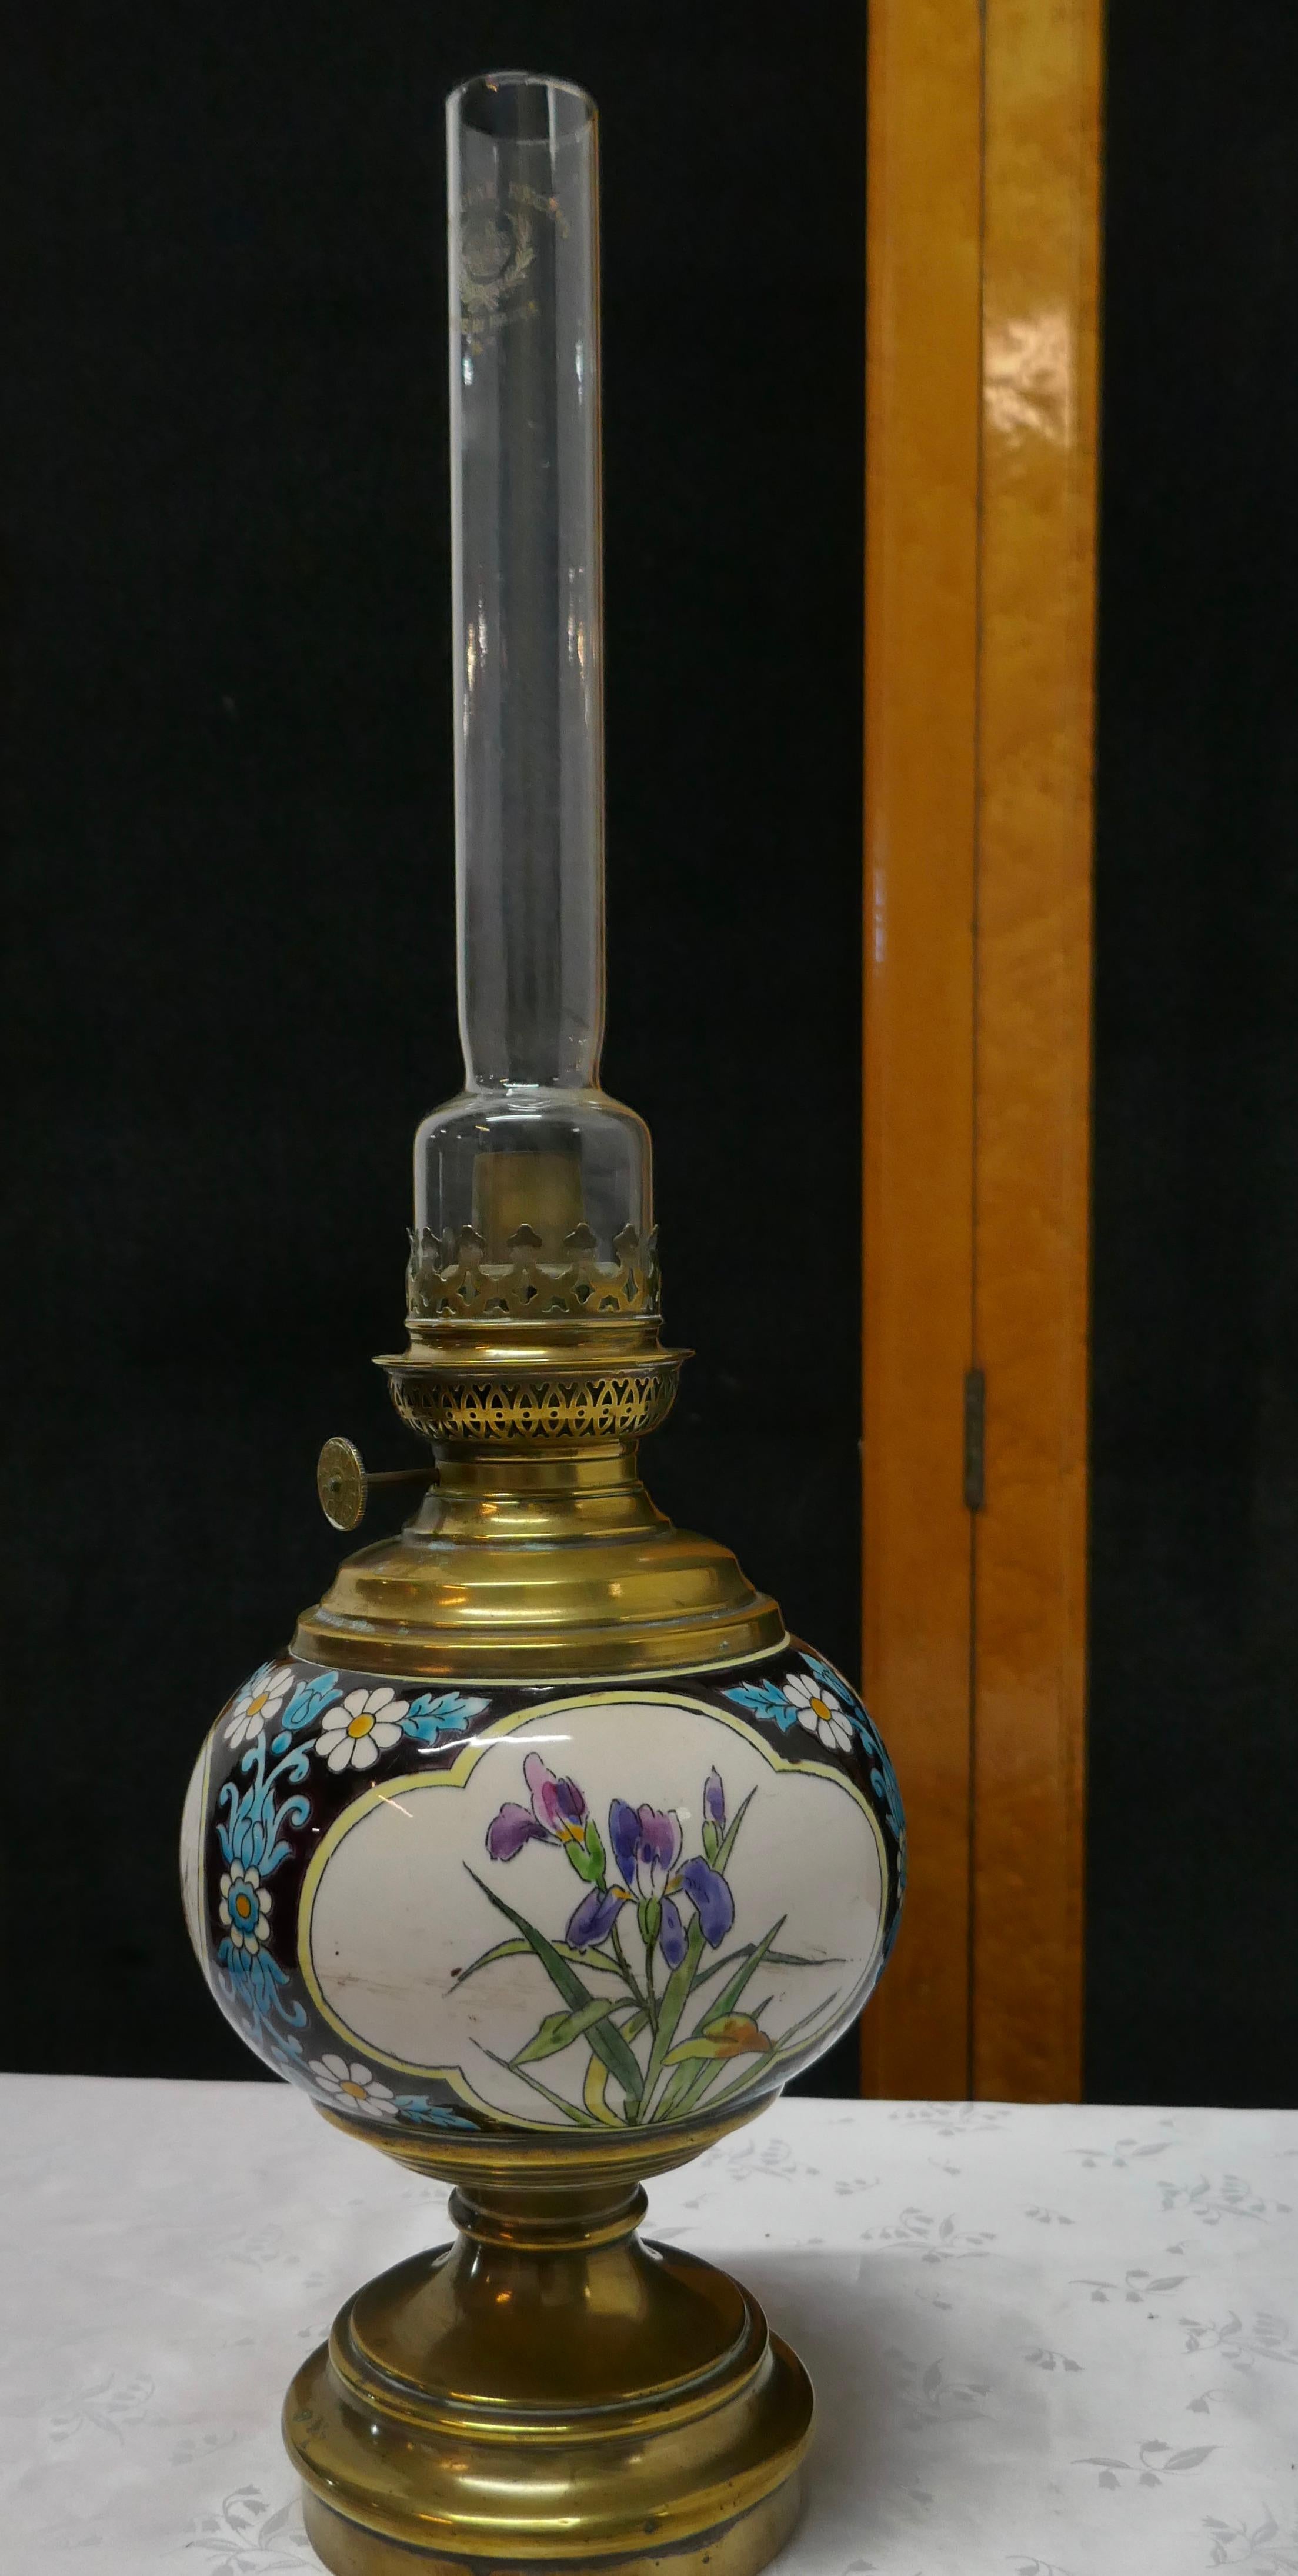 Lampe à huile française Napoléon III en céramique décorée d'oiseaux et de fleurs

Une belle lampe en céramique sur une base en laiton, la lampe a une décoration émaillée colorée en relief, elle a une mèche, un brûleur, etc. mais je ne peux pas